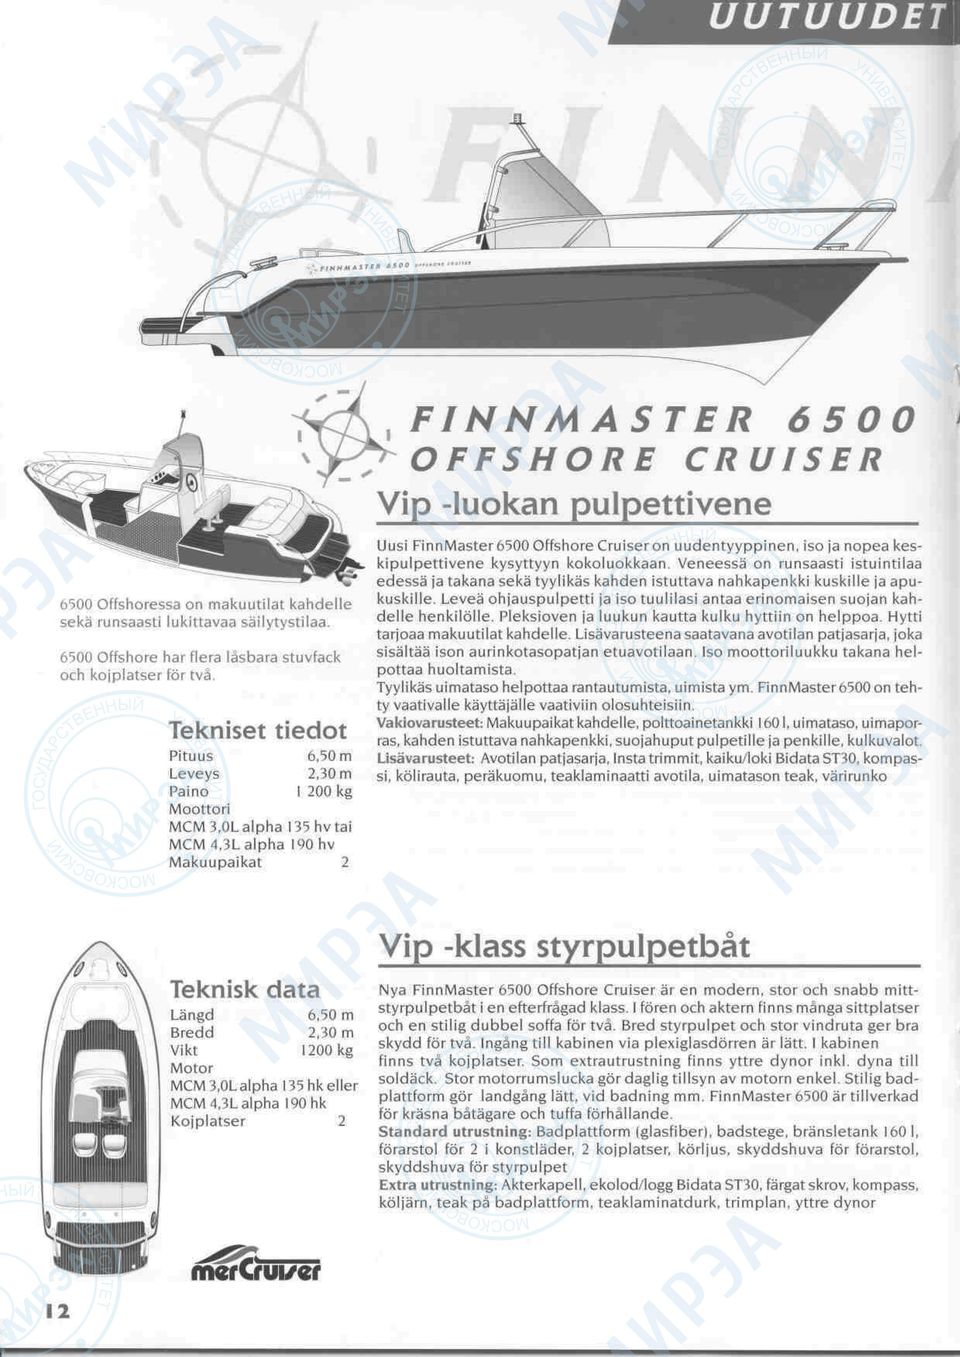 0L alpha 135hvtai MCM 4,3L alpha 190 hv Makuupaikat 2 Uusi FinnMaster 6500 Offshore Cruiser on uudentyyppinen, iso ja nopea keskipulpettivene kysyttyyn kokoluokkaan.